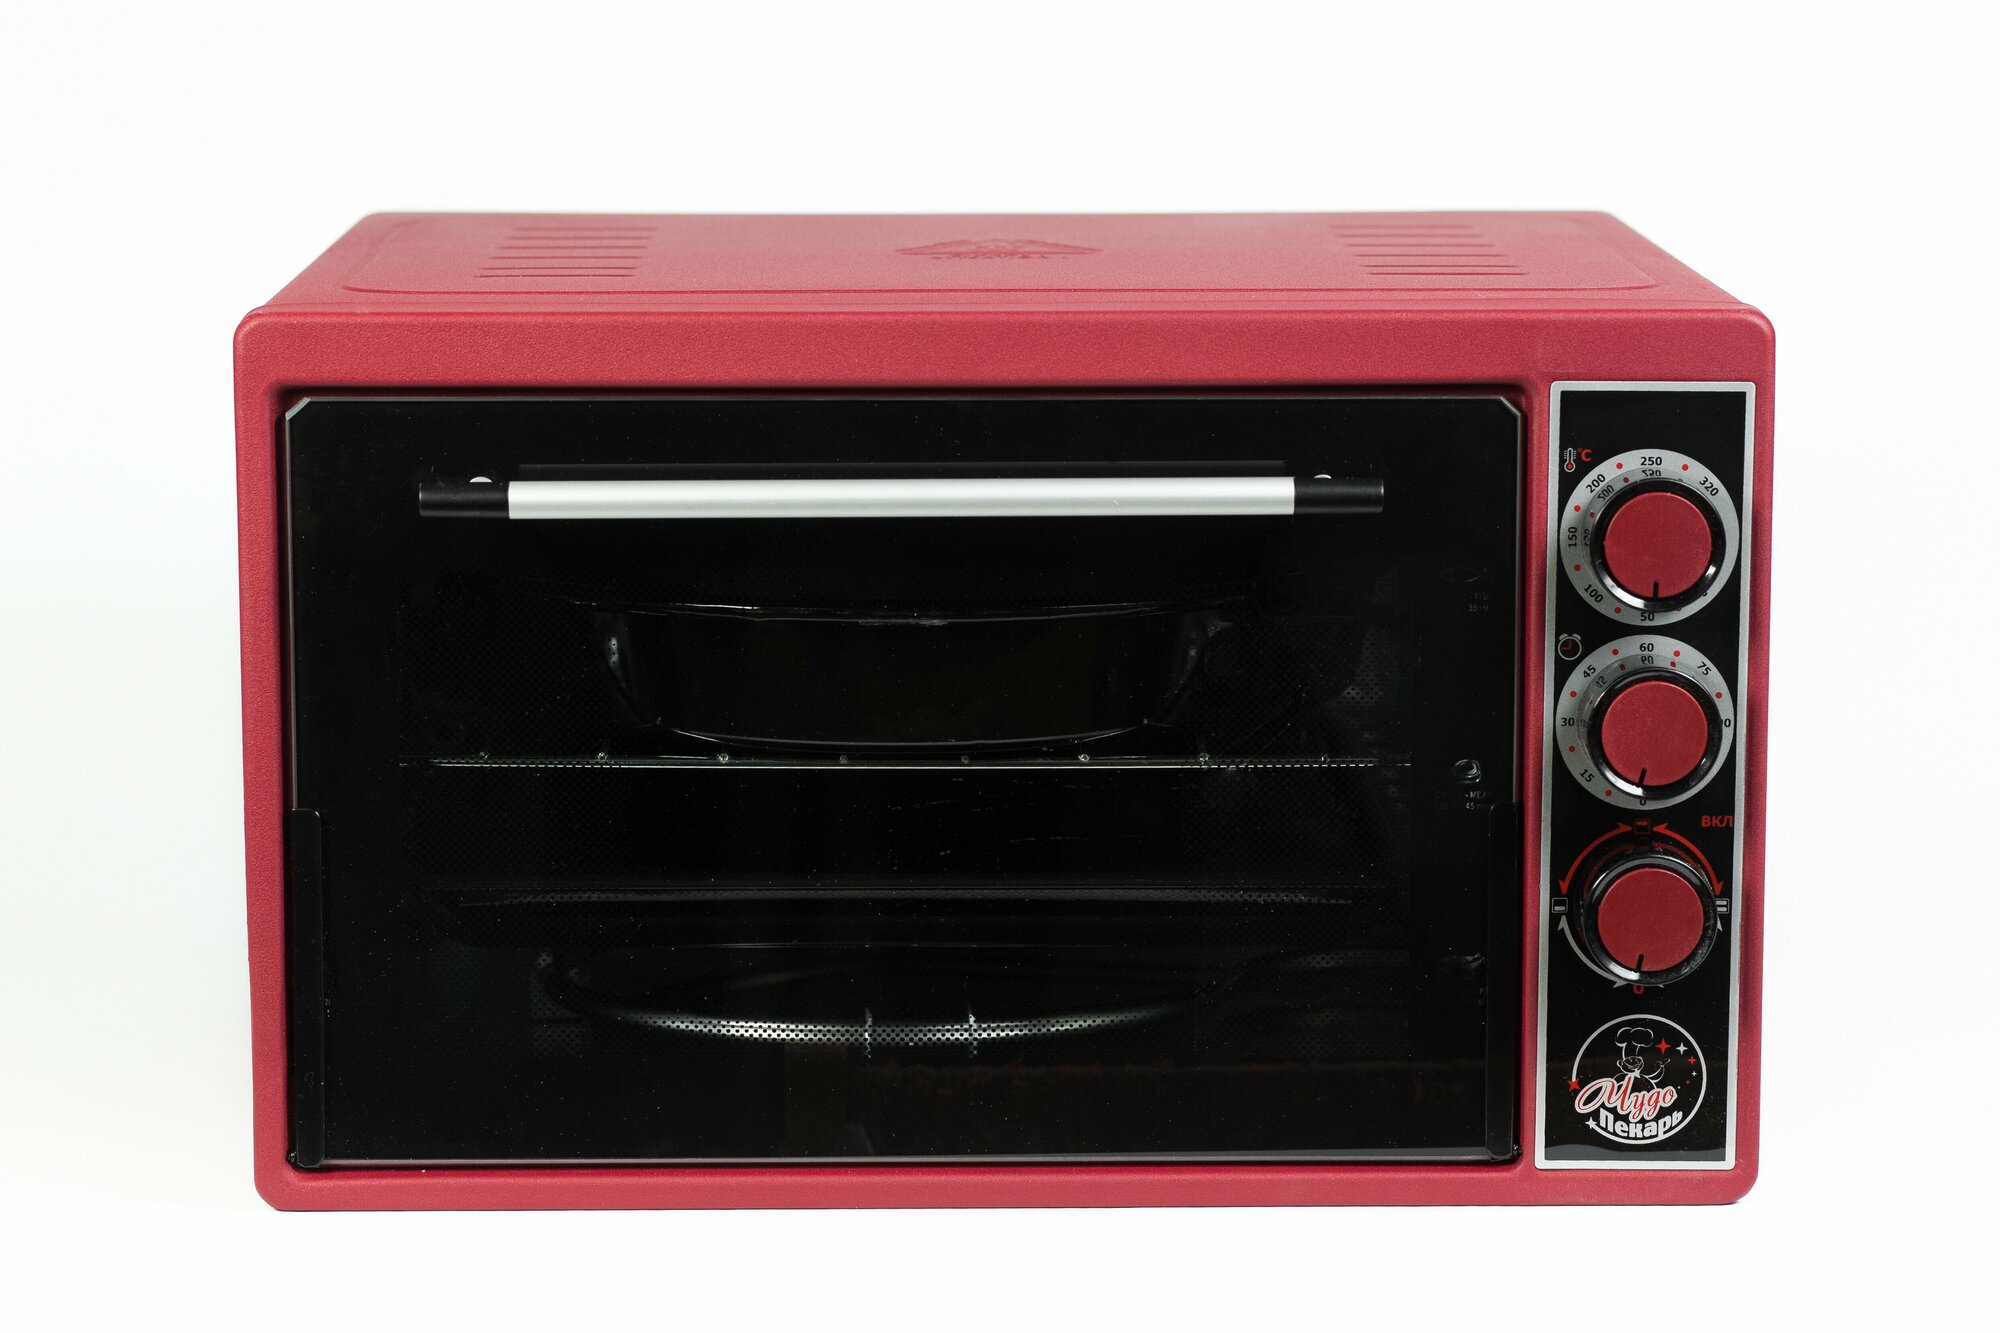 Мини-печь "чудо пекарь" ЭДБ-0123/духовка электрическая настольная (цвет красный, 39 л, 2 противня)